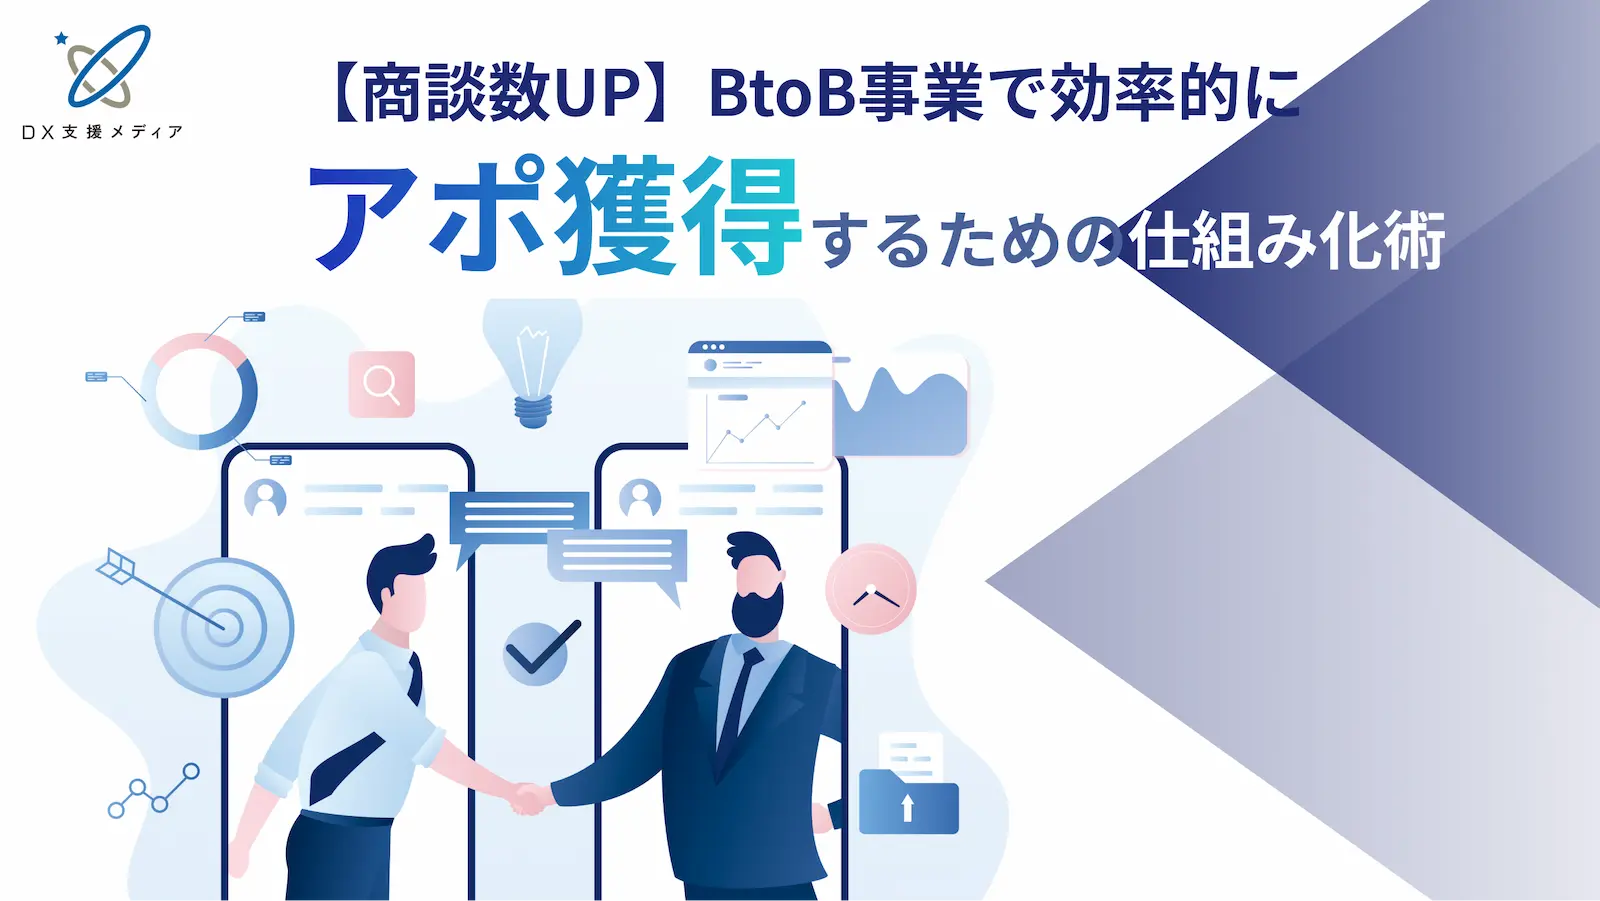 【商談数UP】BtoB事業で効率的にアポ獲得するための仕組み化術